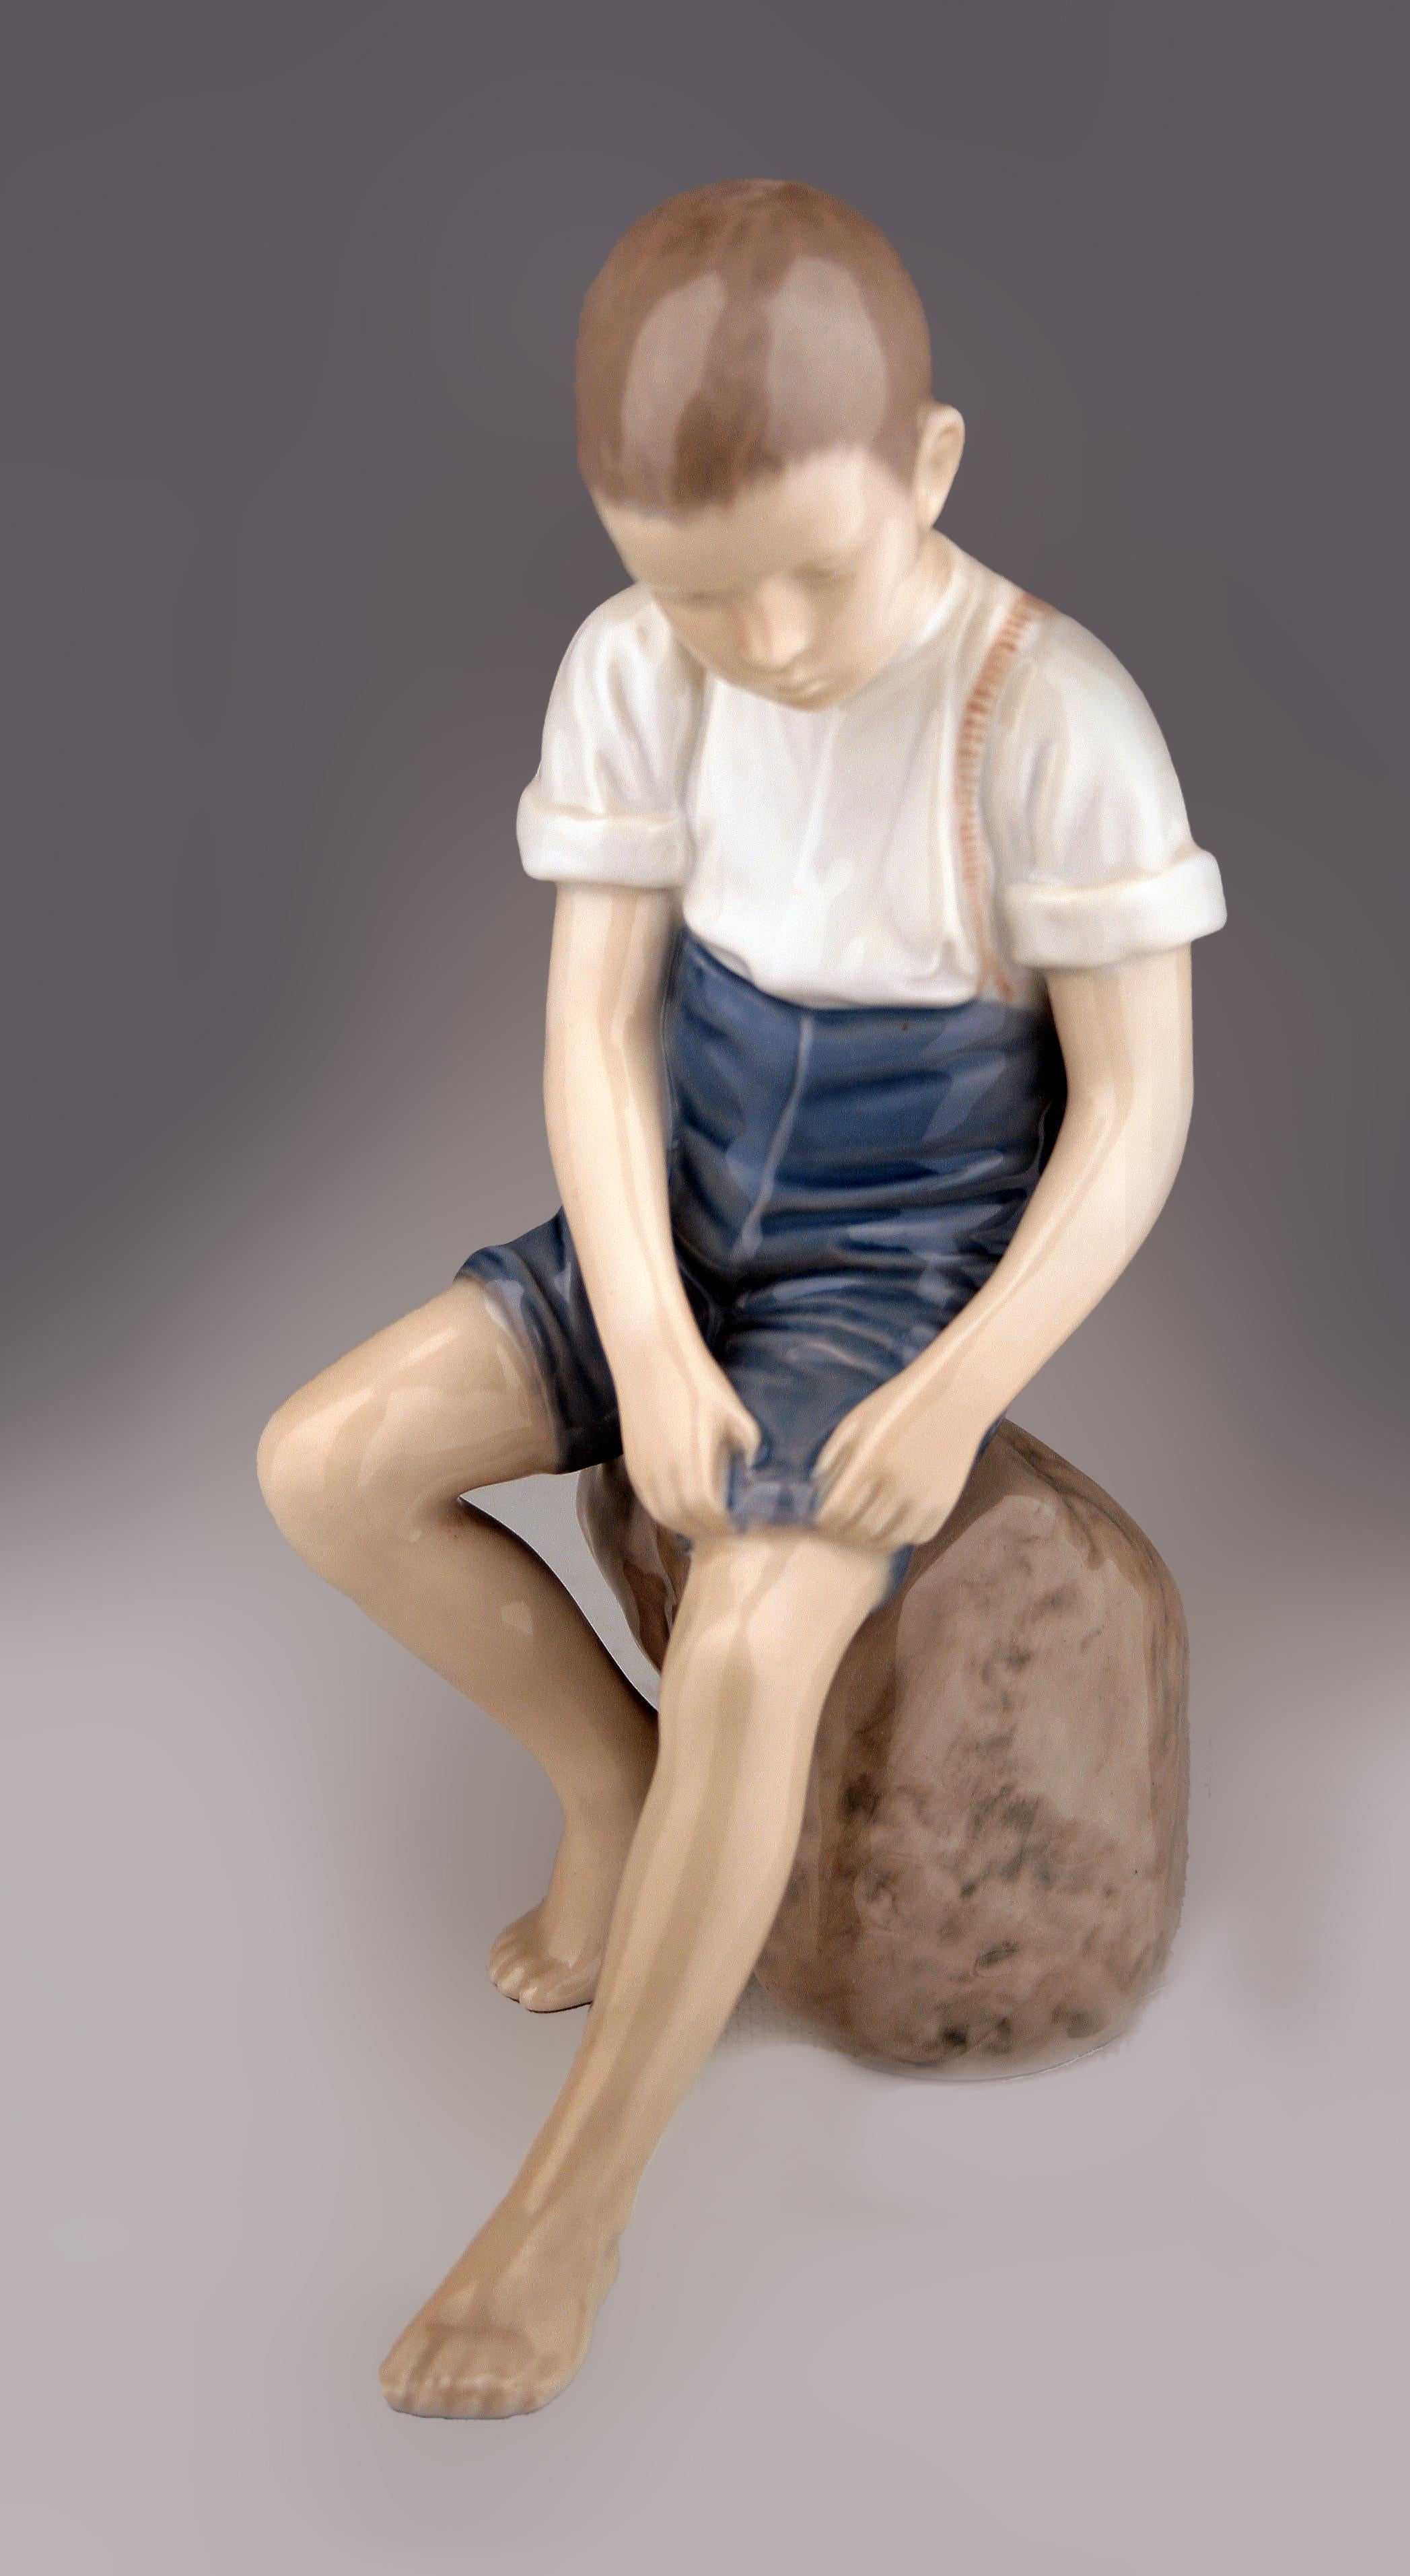 Sculpture en porcelaine émaillée moderne scandinave du milieu du 20e siècle représentant un garçon assis sur un rocher par la société danoise Bing & Grøndahl.

Par : Bing & Grøndahl
MATERIAL : porcelaine, peinture, céramique
Technique : pressé,